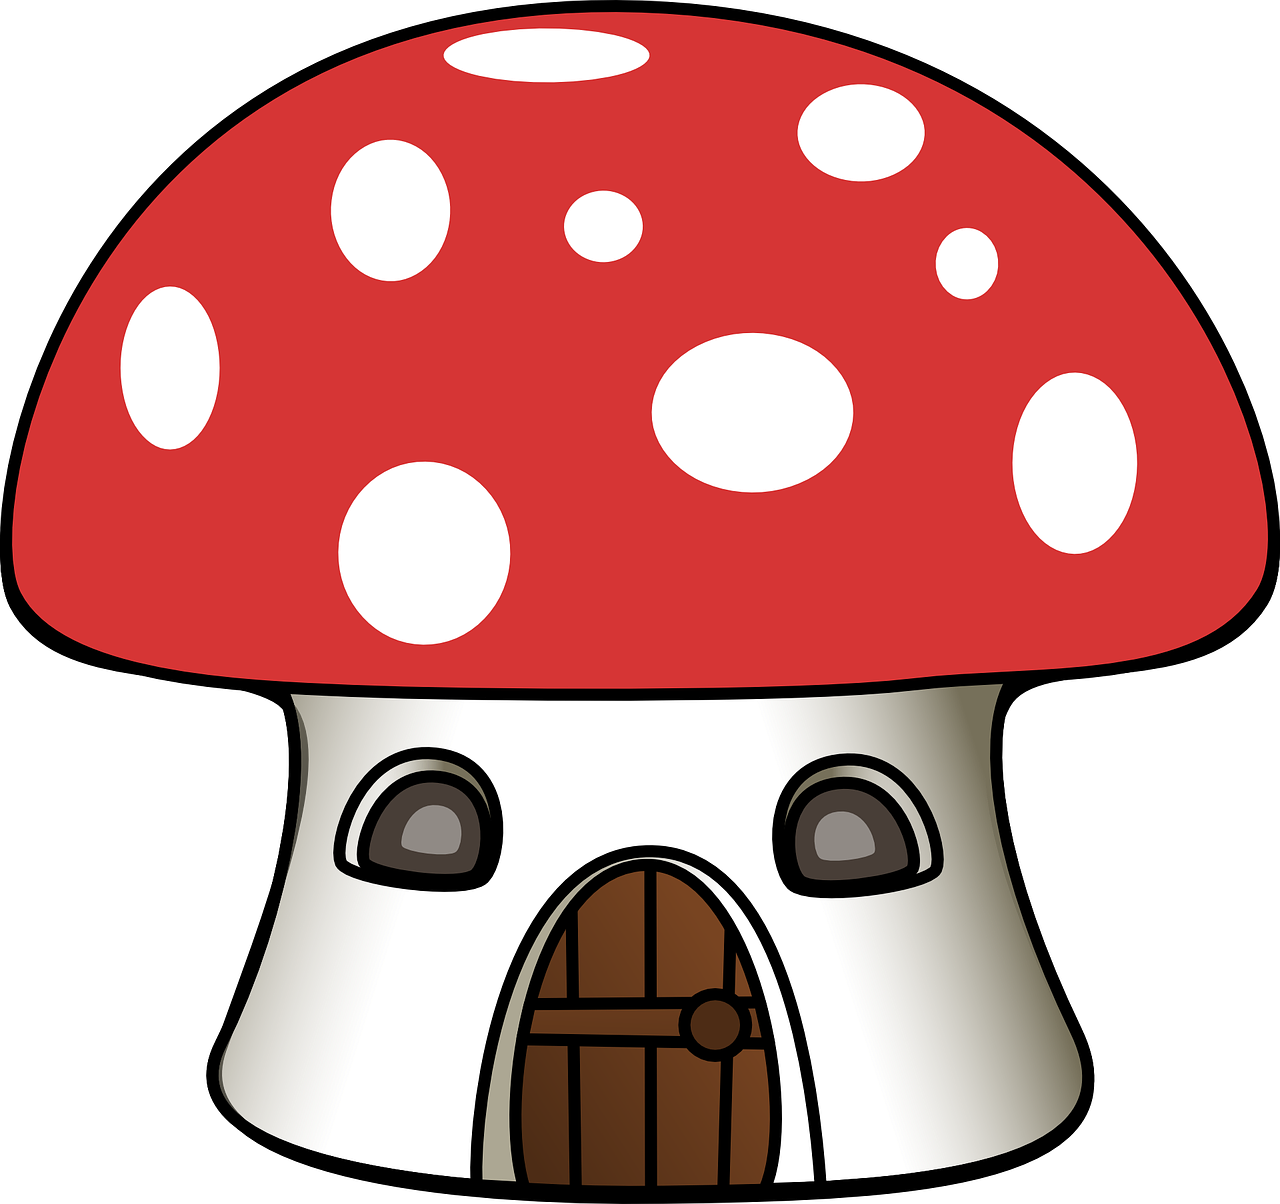 Mushroom,house,cartoon,toadstool,home